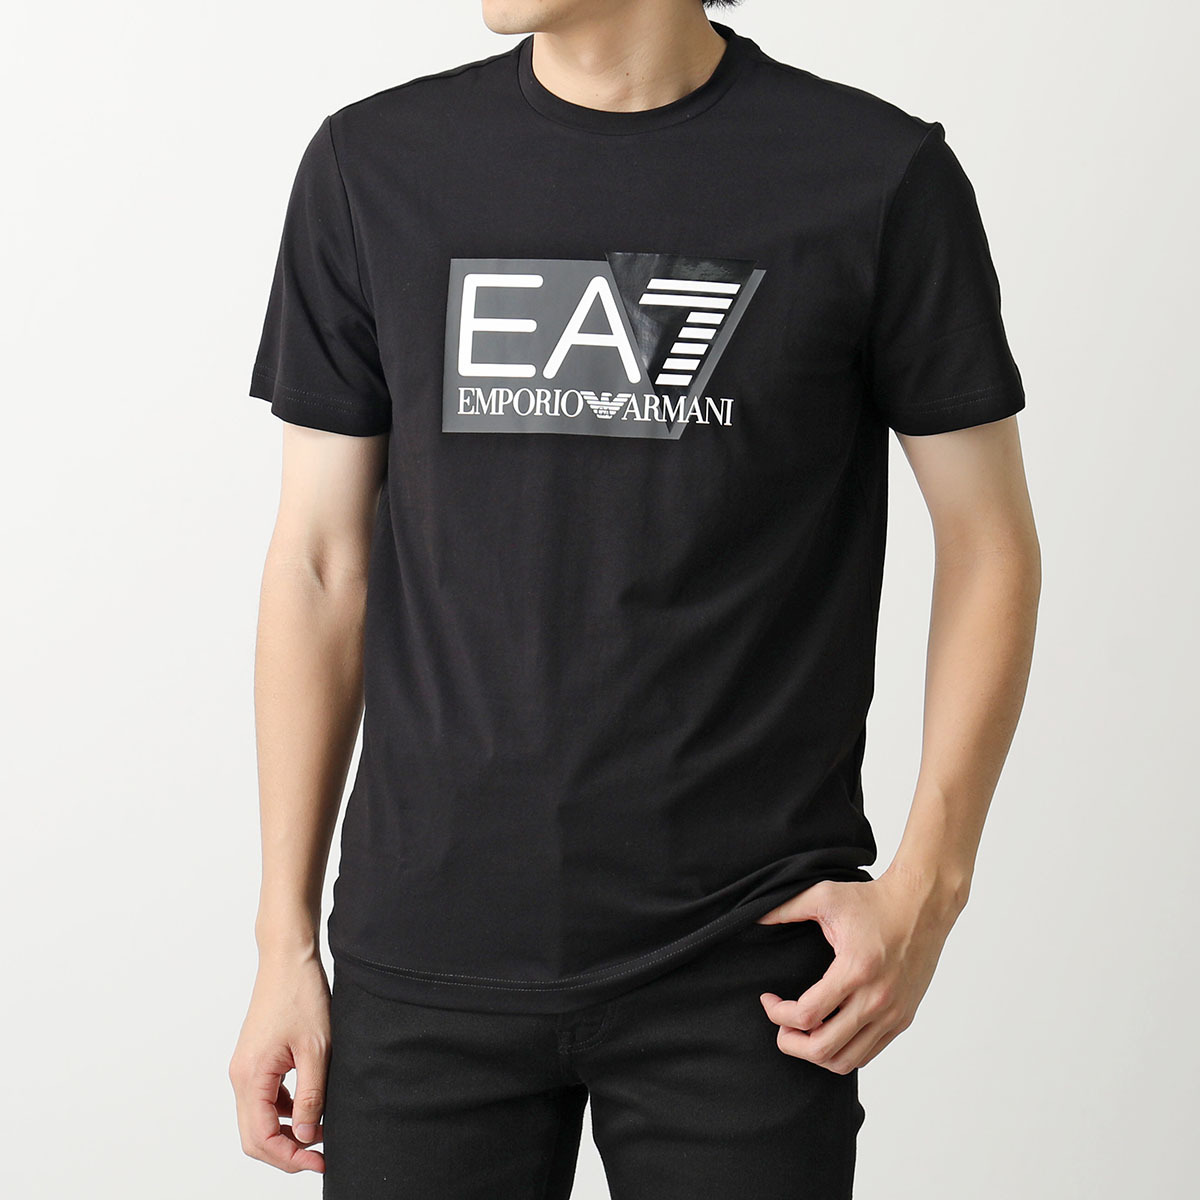 EA7 EMPORIO ARMANI エアセッテ エンポリオアルマーニ Tシャツ 3DPT62 PJ...